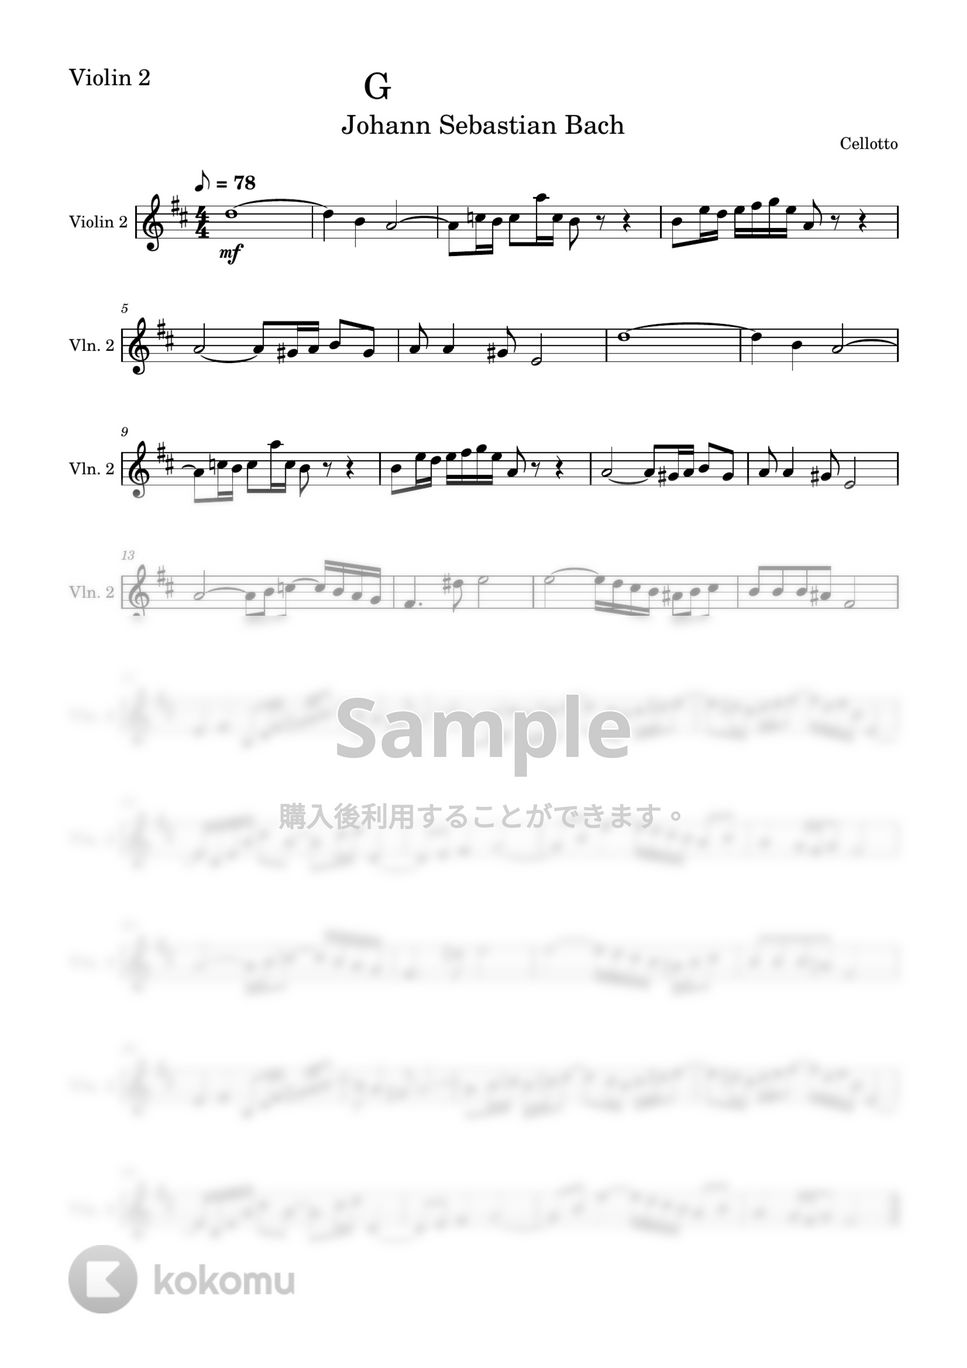 バッハ - G線上のアリア (ヴァイオリン2 - 弦楽四重奏) by Cellotto